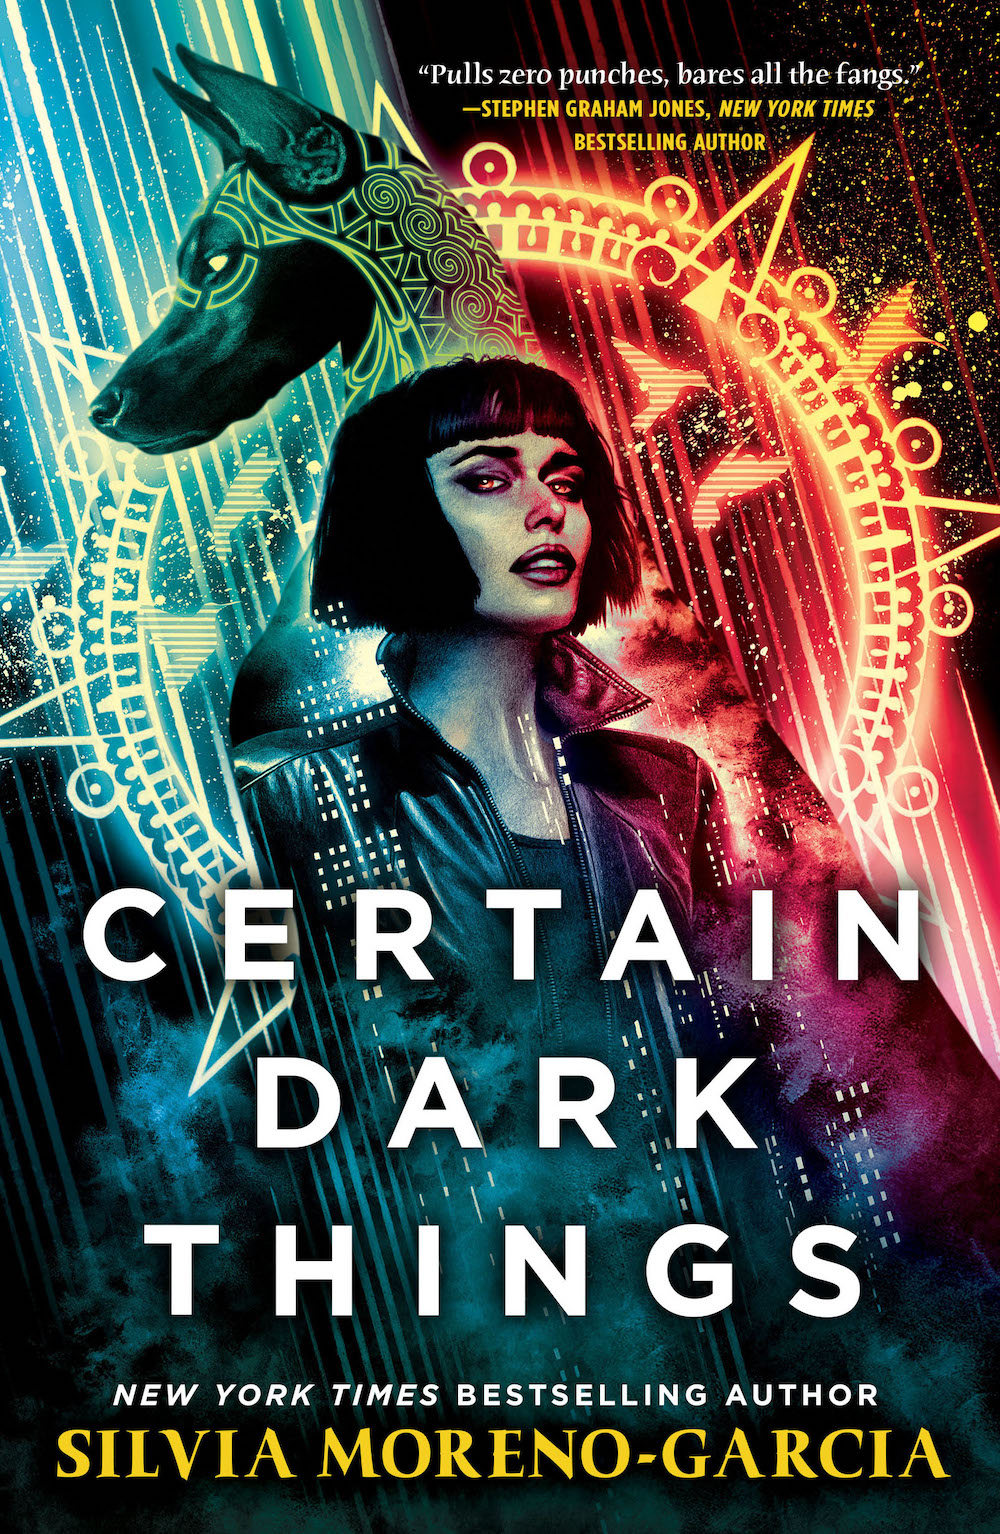 Certain Dark Things - 410